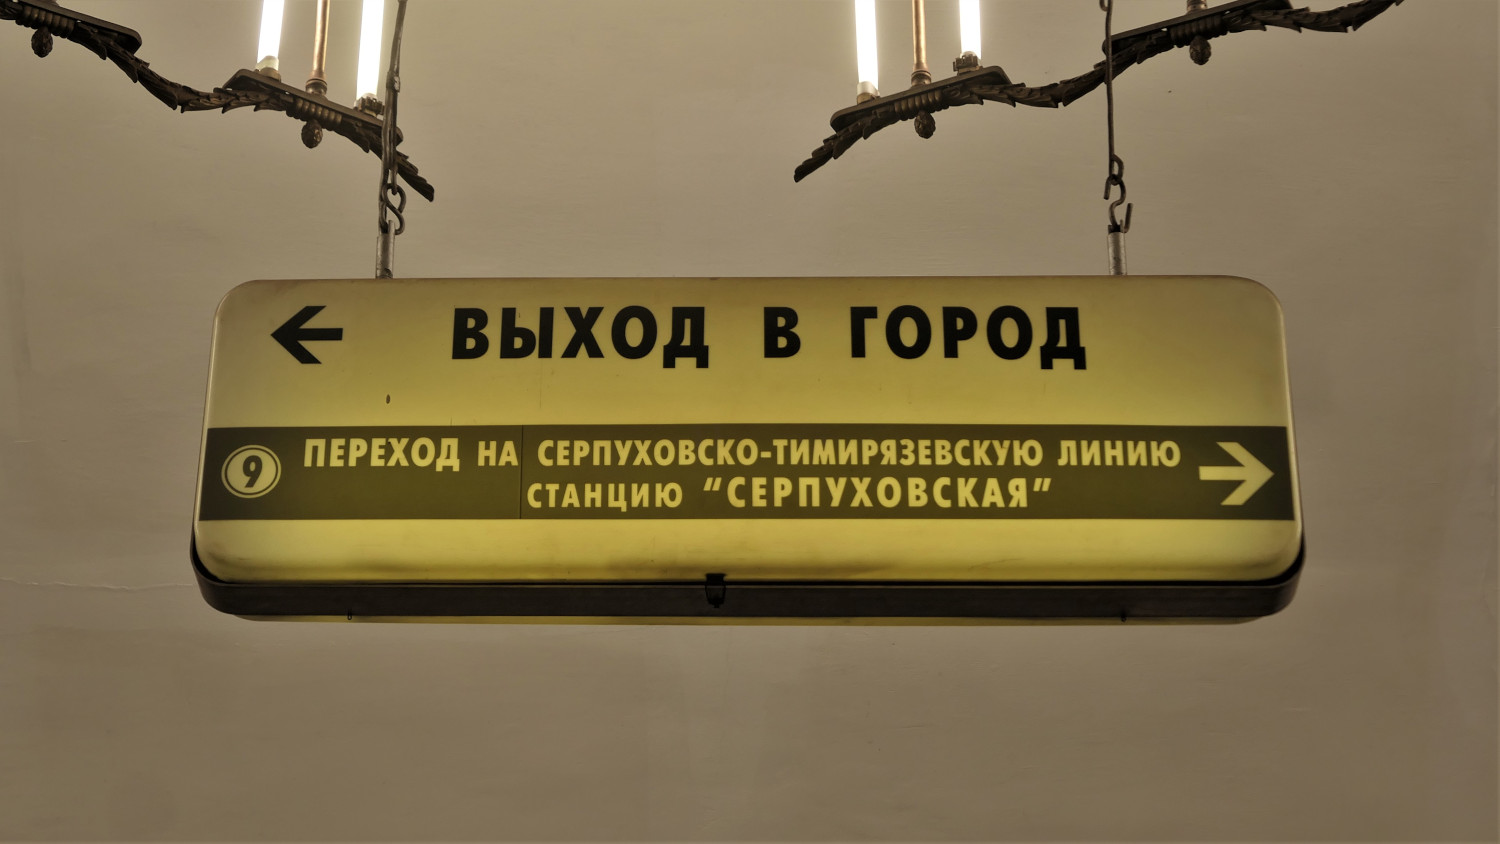 Москва — Метрополитен — [5] Кольцевая линия; Москва — Метрополитен — прочее